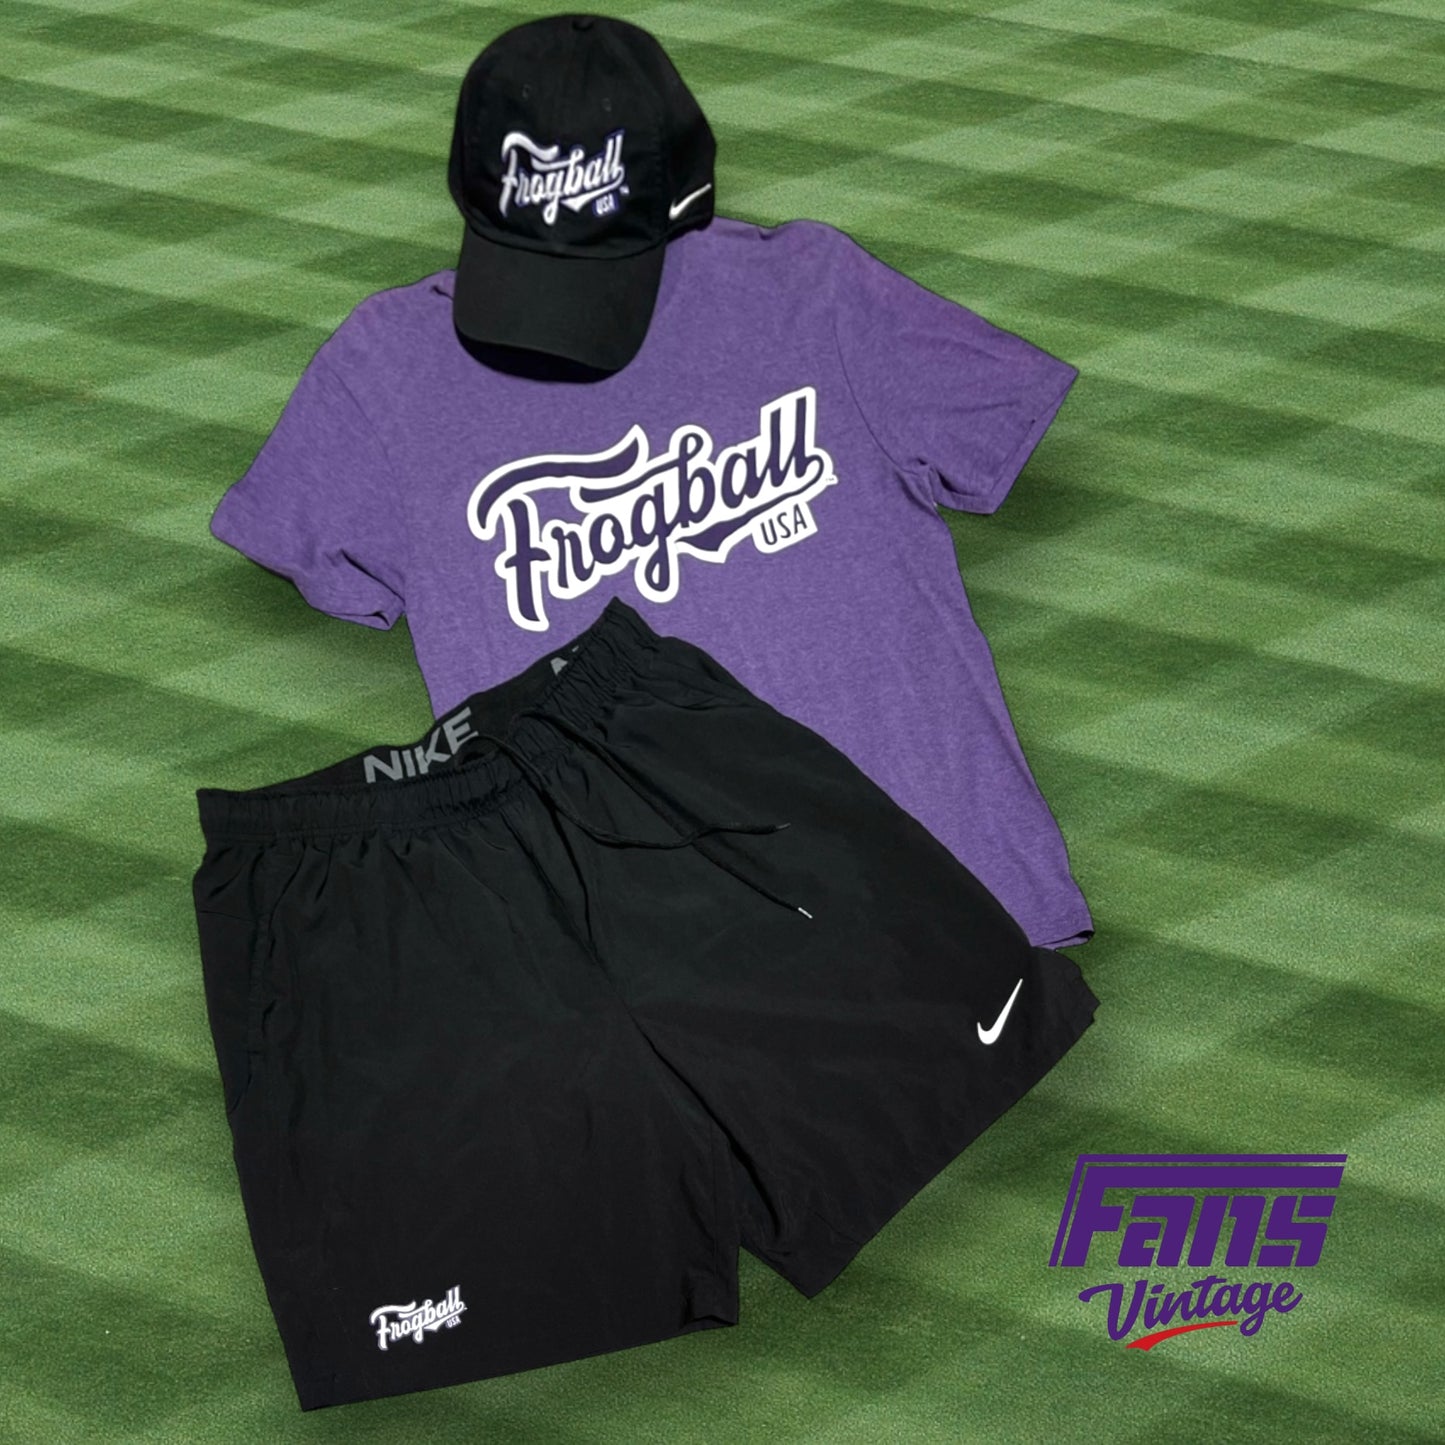 TCU Baseball player-issue “Frogball” Nike workout shorts